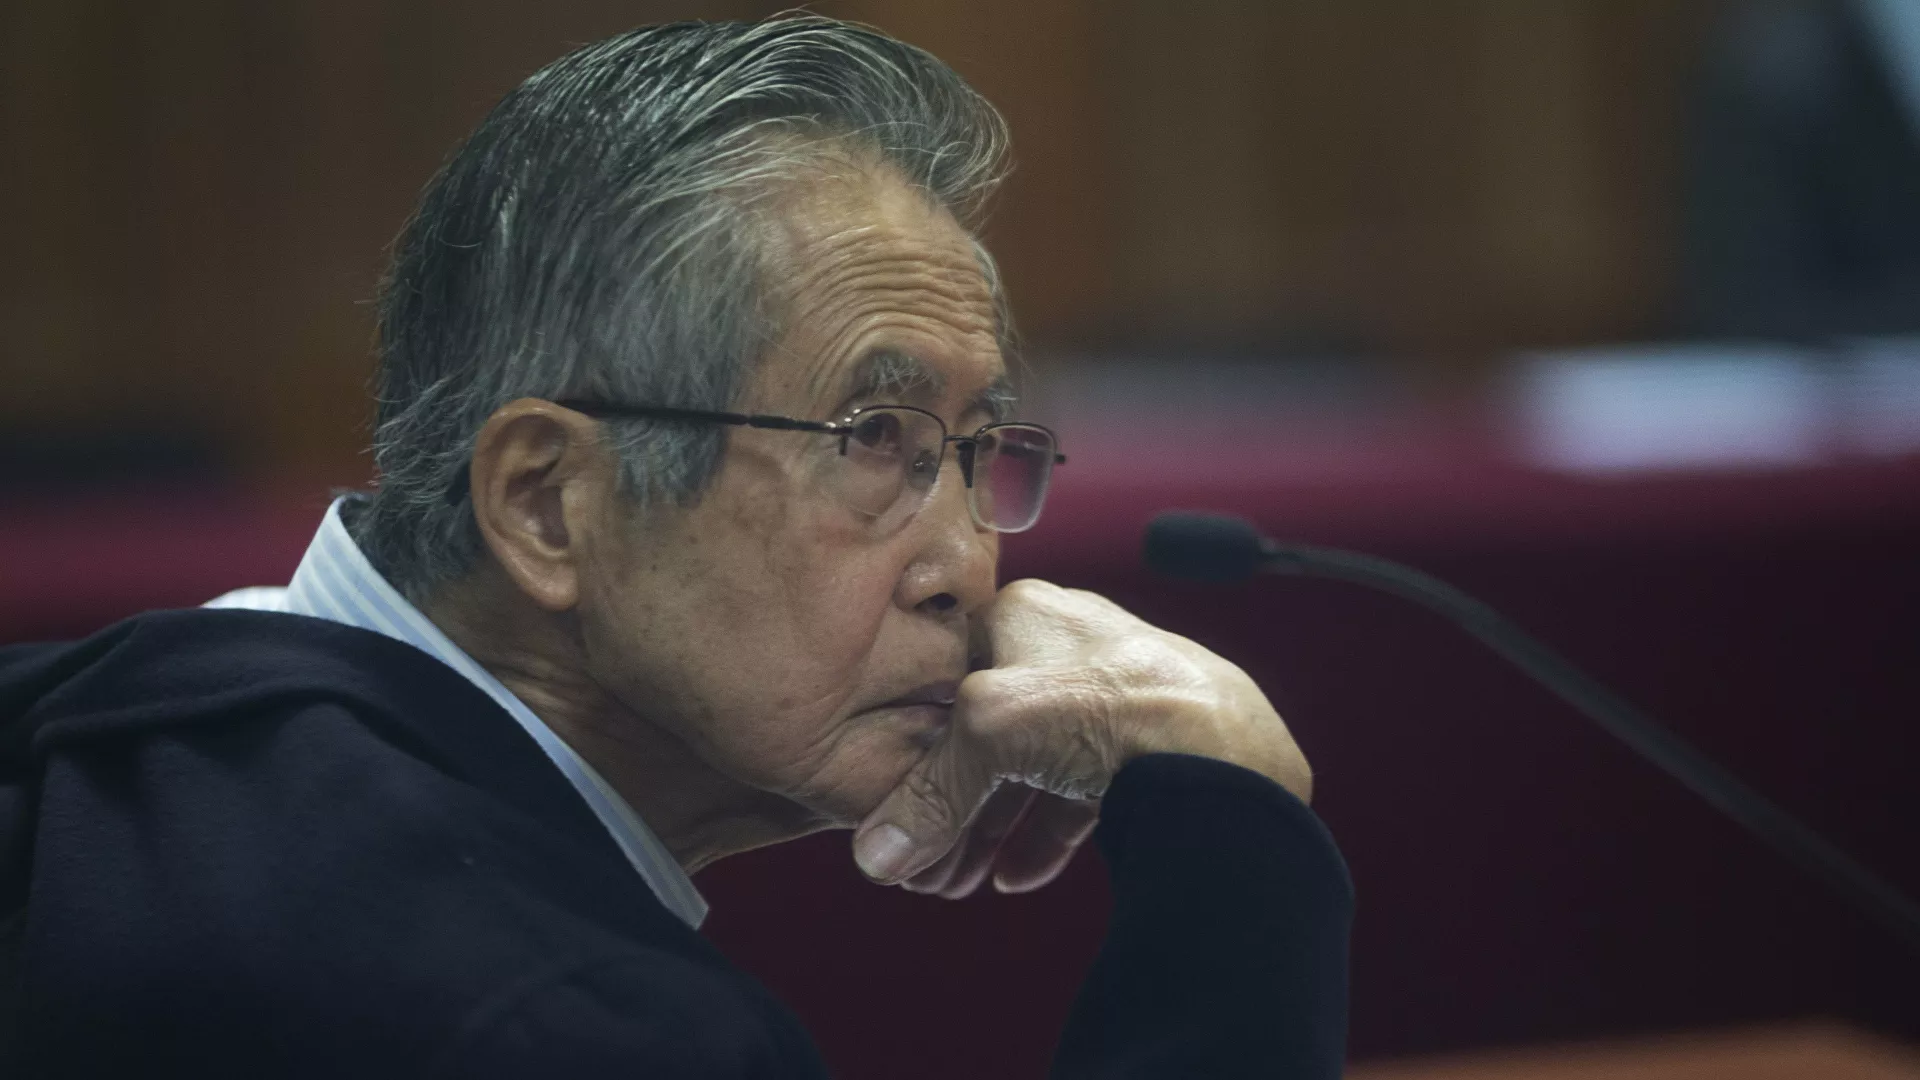  Justicia peruana prohíbe salir del país a Alberto Fujimori por asesinato de campesinos